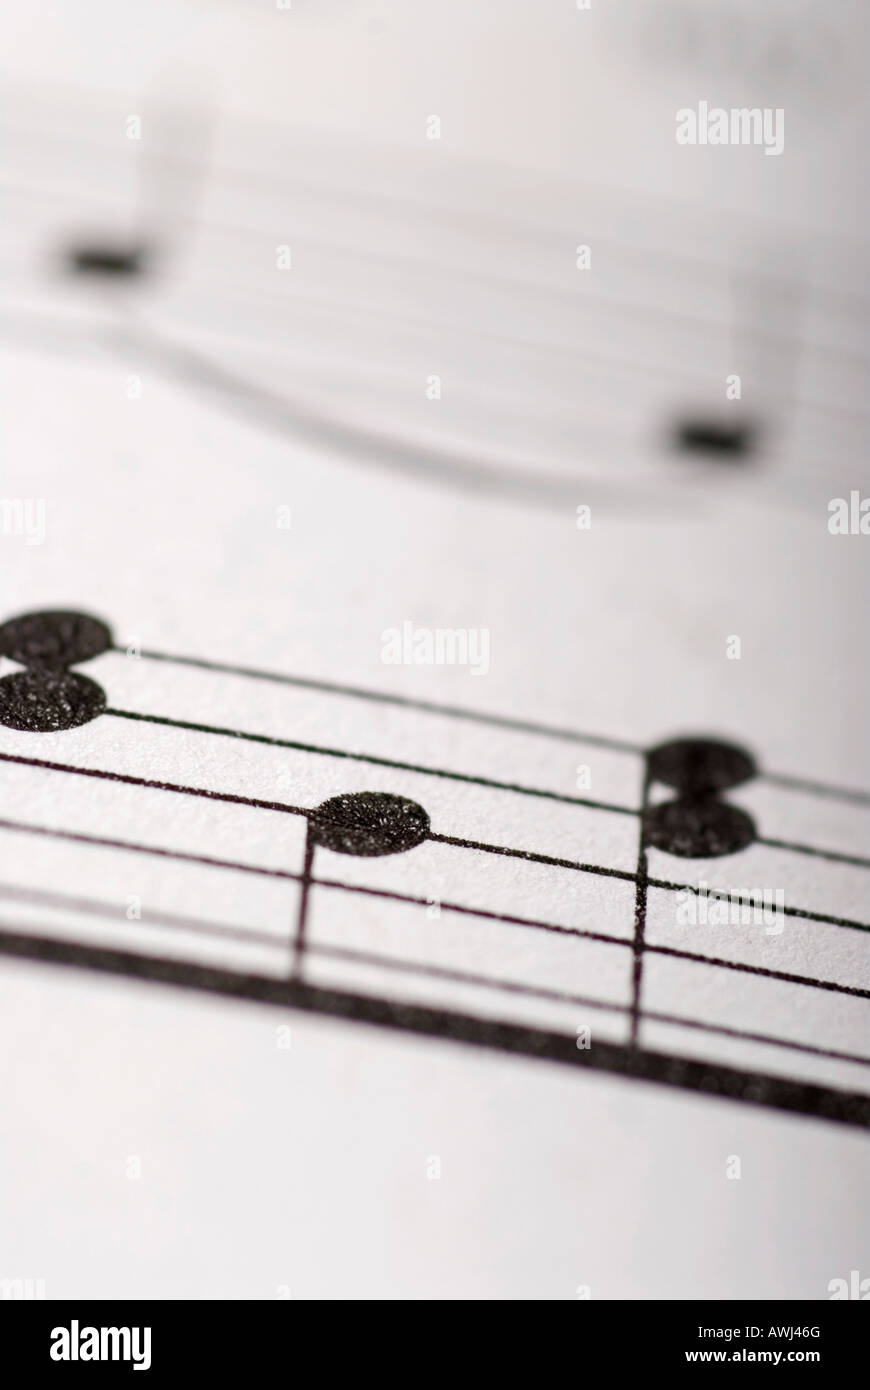 Stock photo de feuilles de musique contenant des notes de musique Banque D'Images